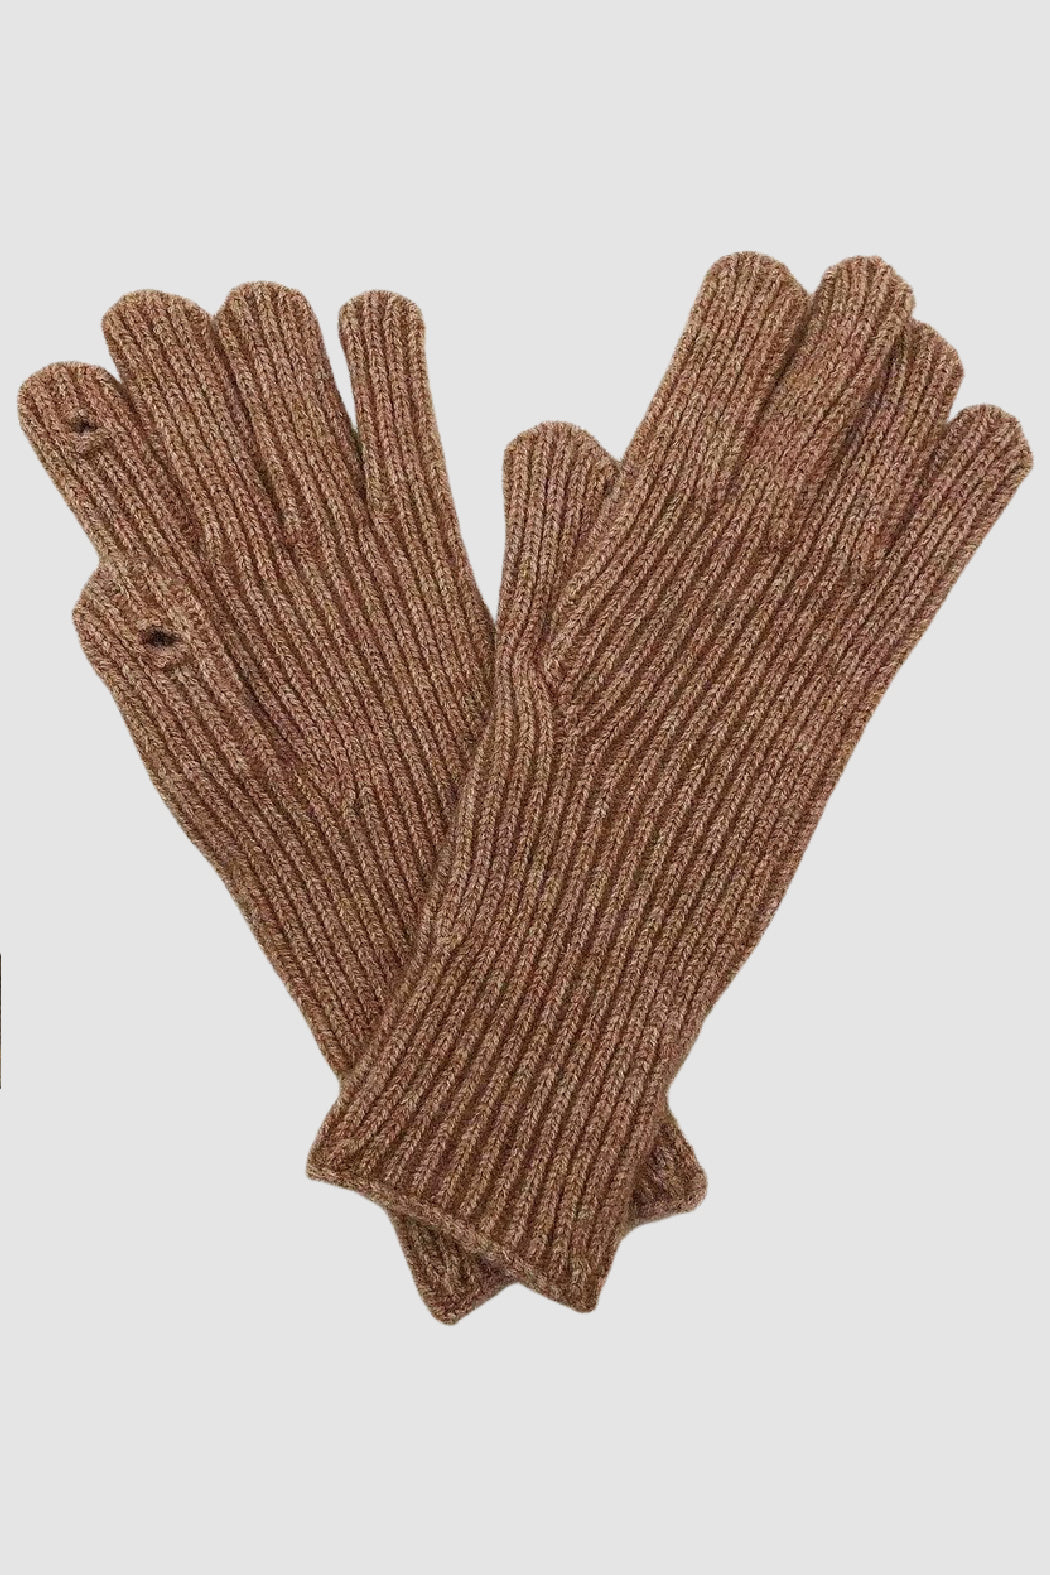 Finger Opening Gloves